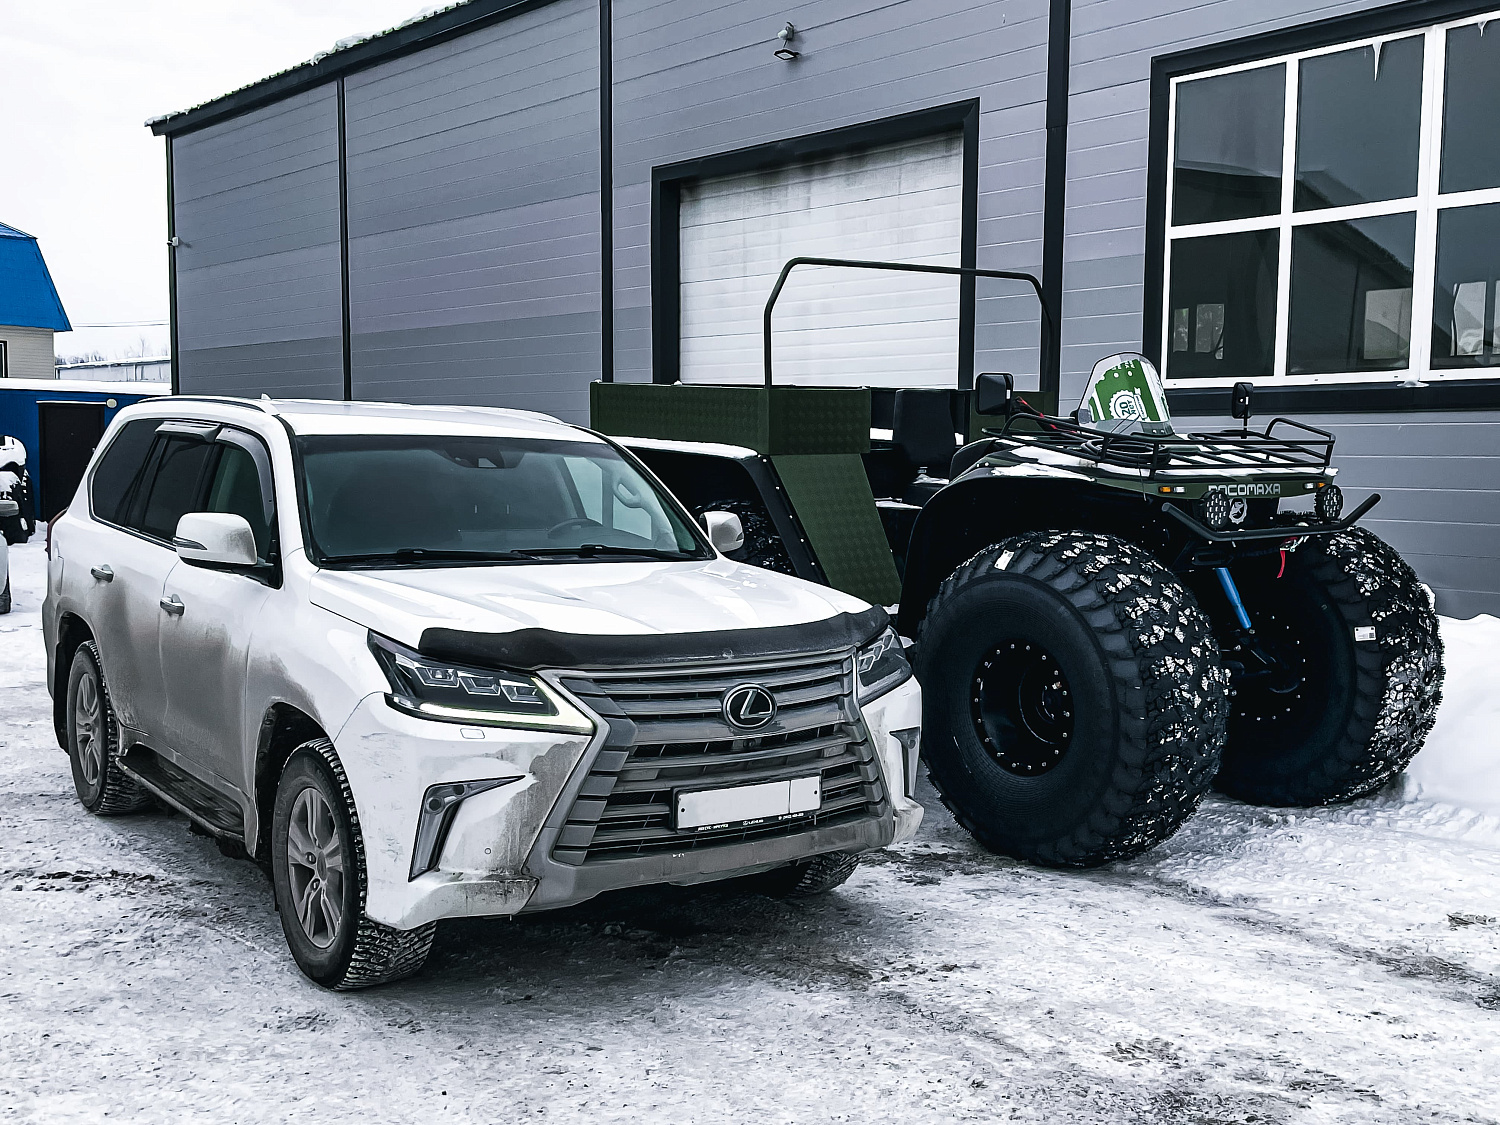 Снегоболотоход "Росомаха" Комплектация (Пикап) с ДВС 1ZZ-FE (1,8 литра с мостами Toyota)